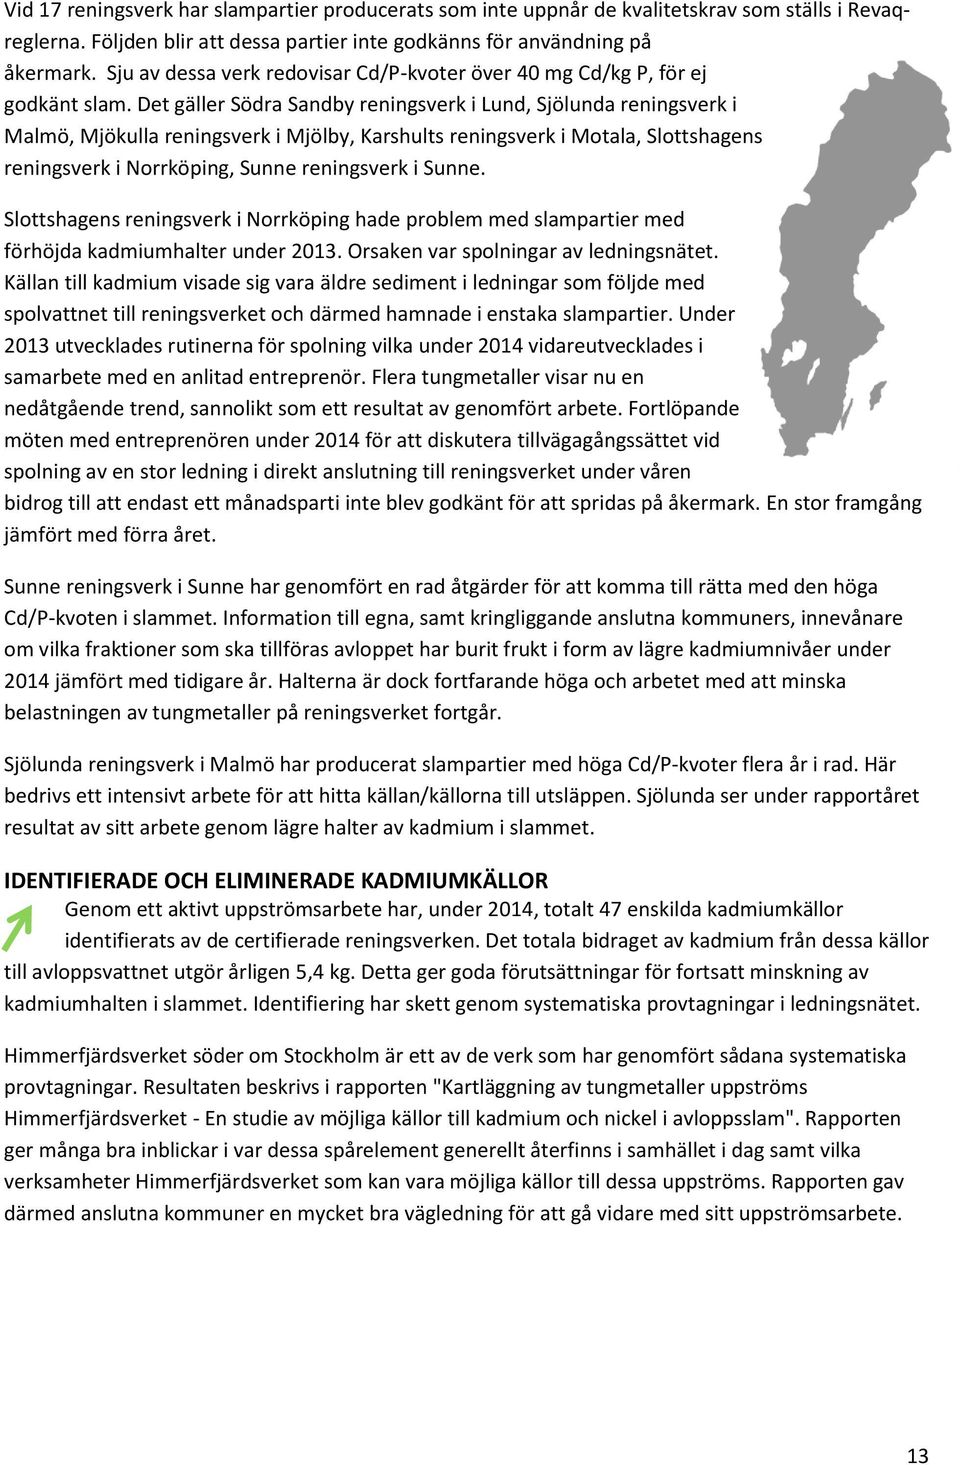 Det gäller Södra Sandby reningsverk i Lund, Sjölunda reningsverk i Malmö, Mjökulla reningsverk i Mjölby, Karshults reningsverk i Motala, Slottshagens reningsverk i Norrköping, Sunne reningsverk i